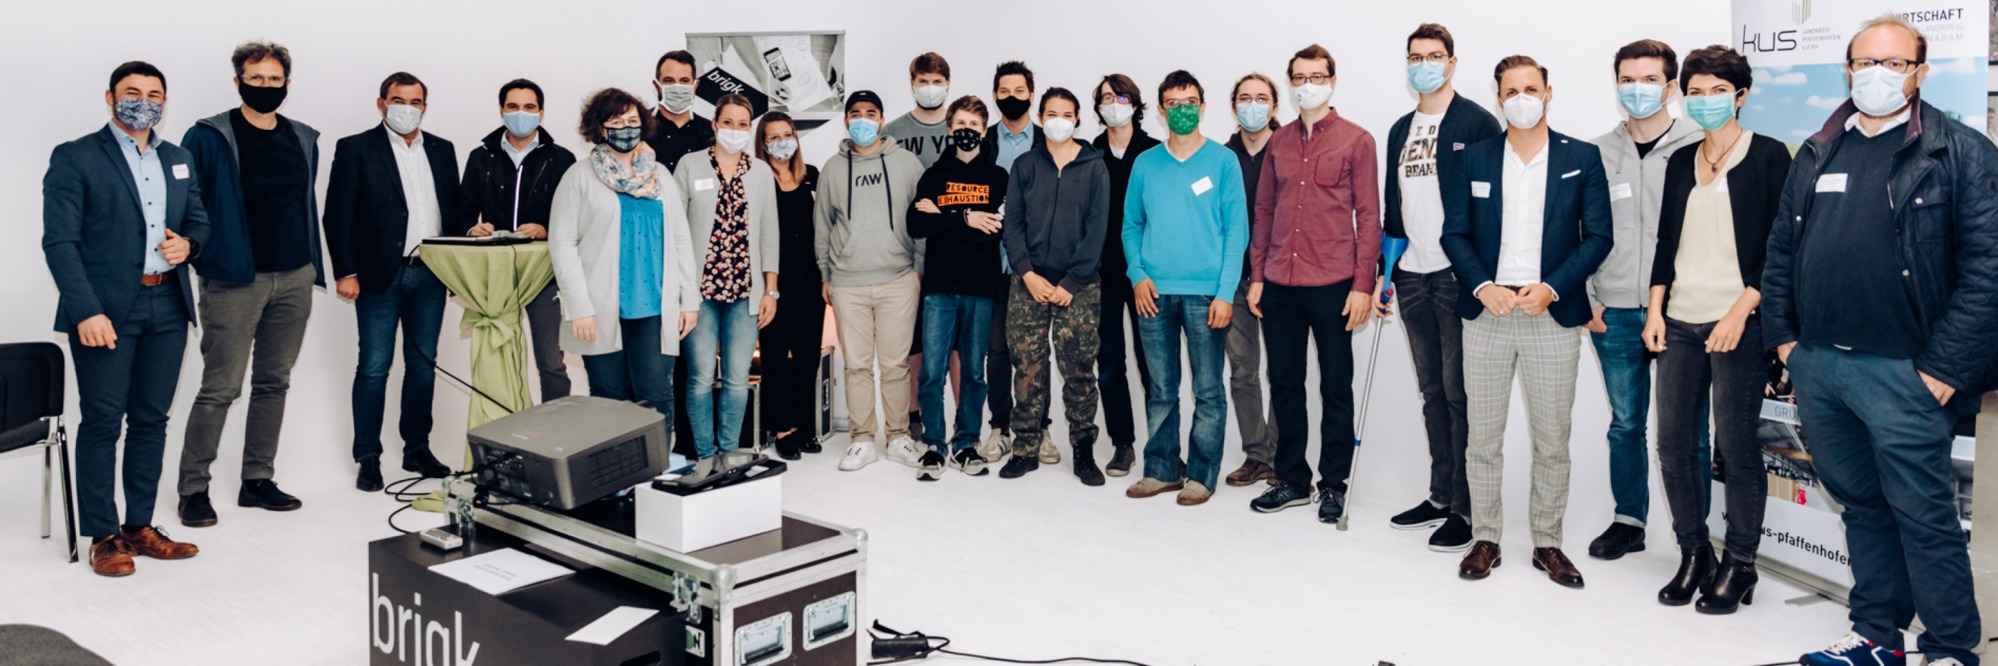 Digitalisierung erleben und gestalten: Das war der Hackathon in Pfaffenhofen an der Ilm